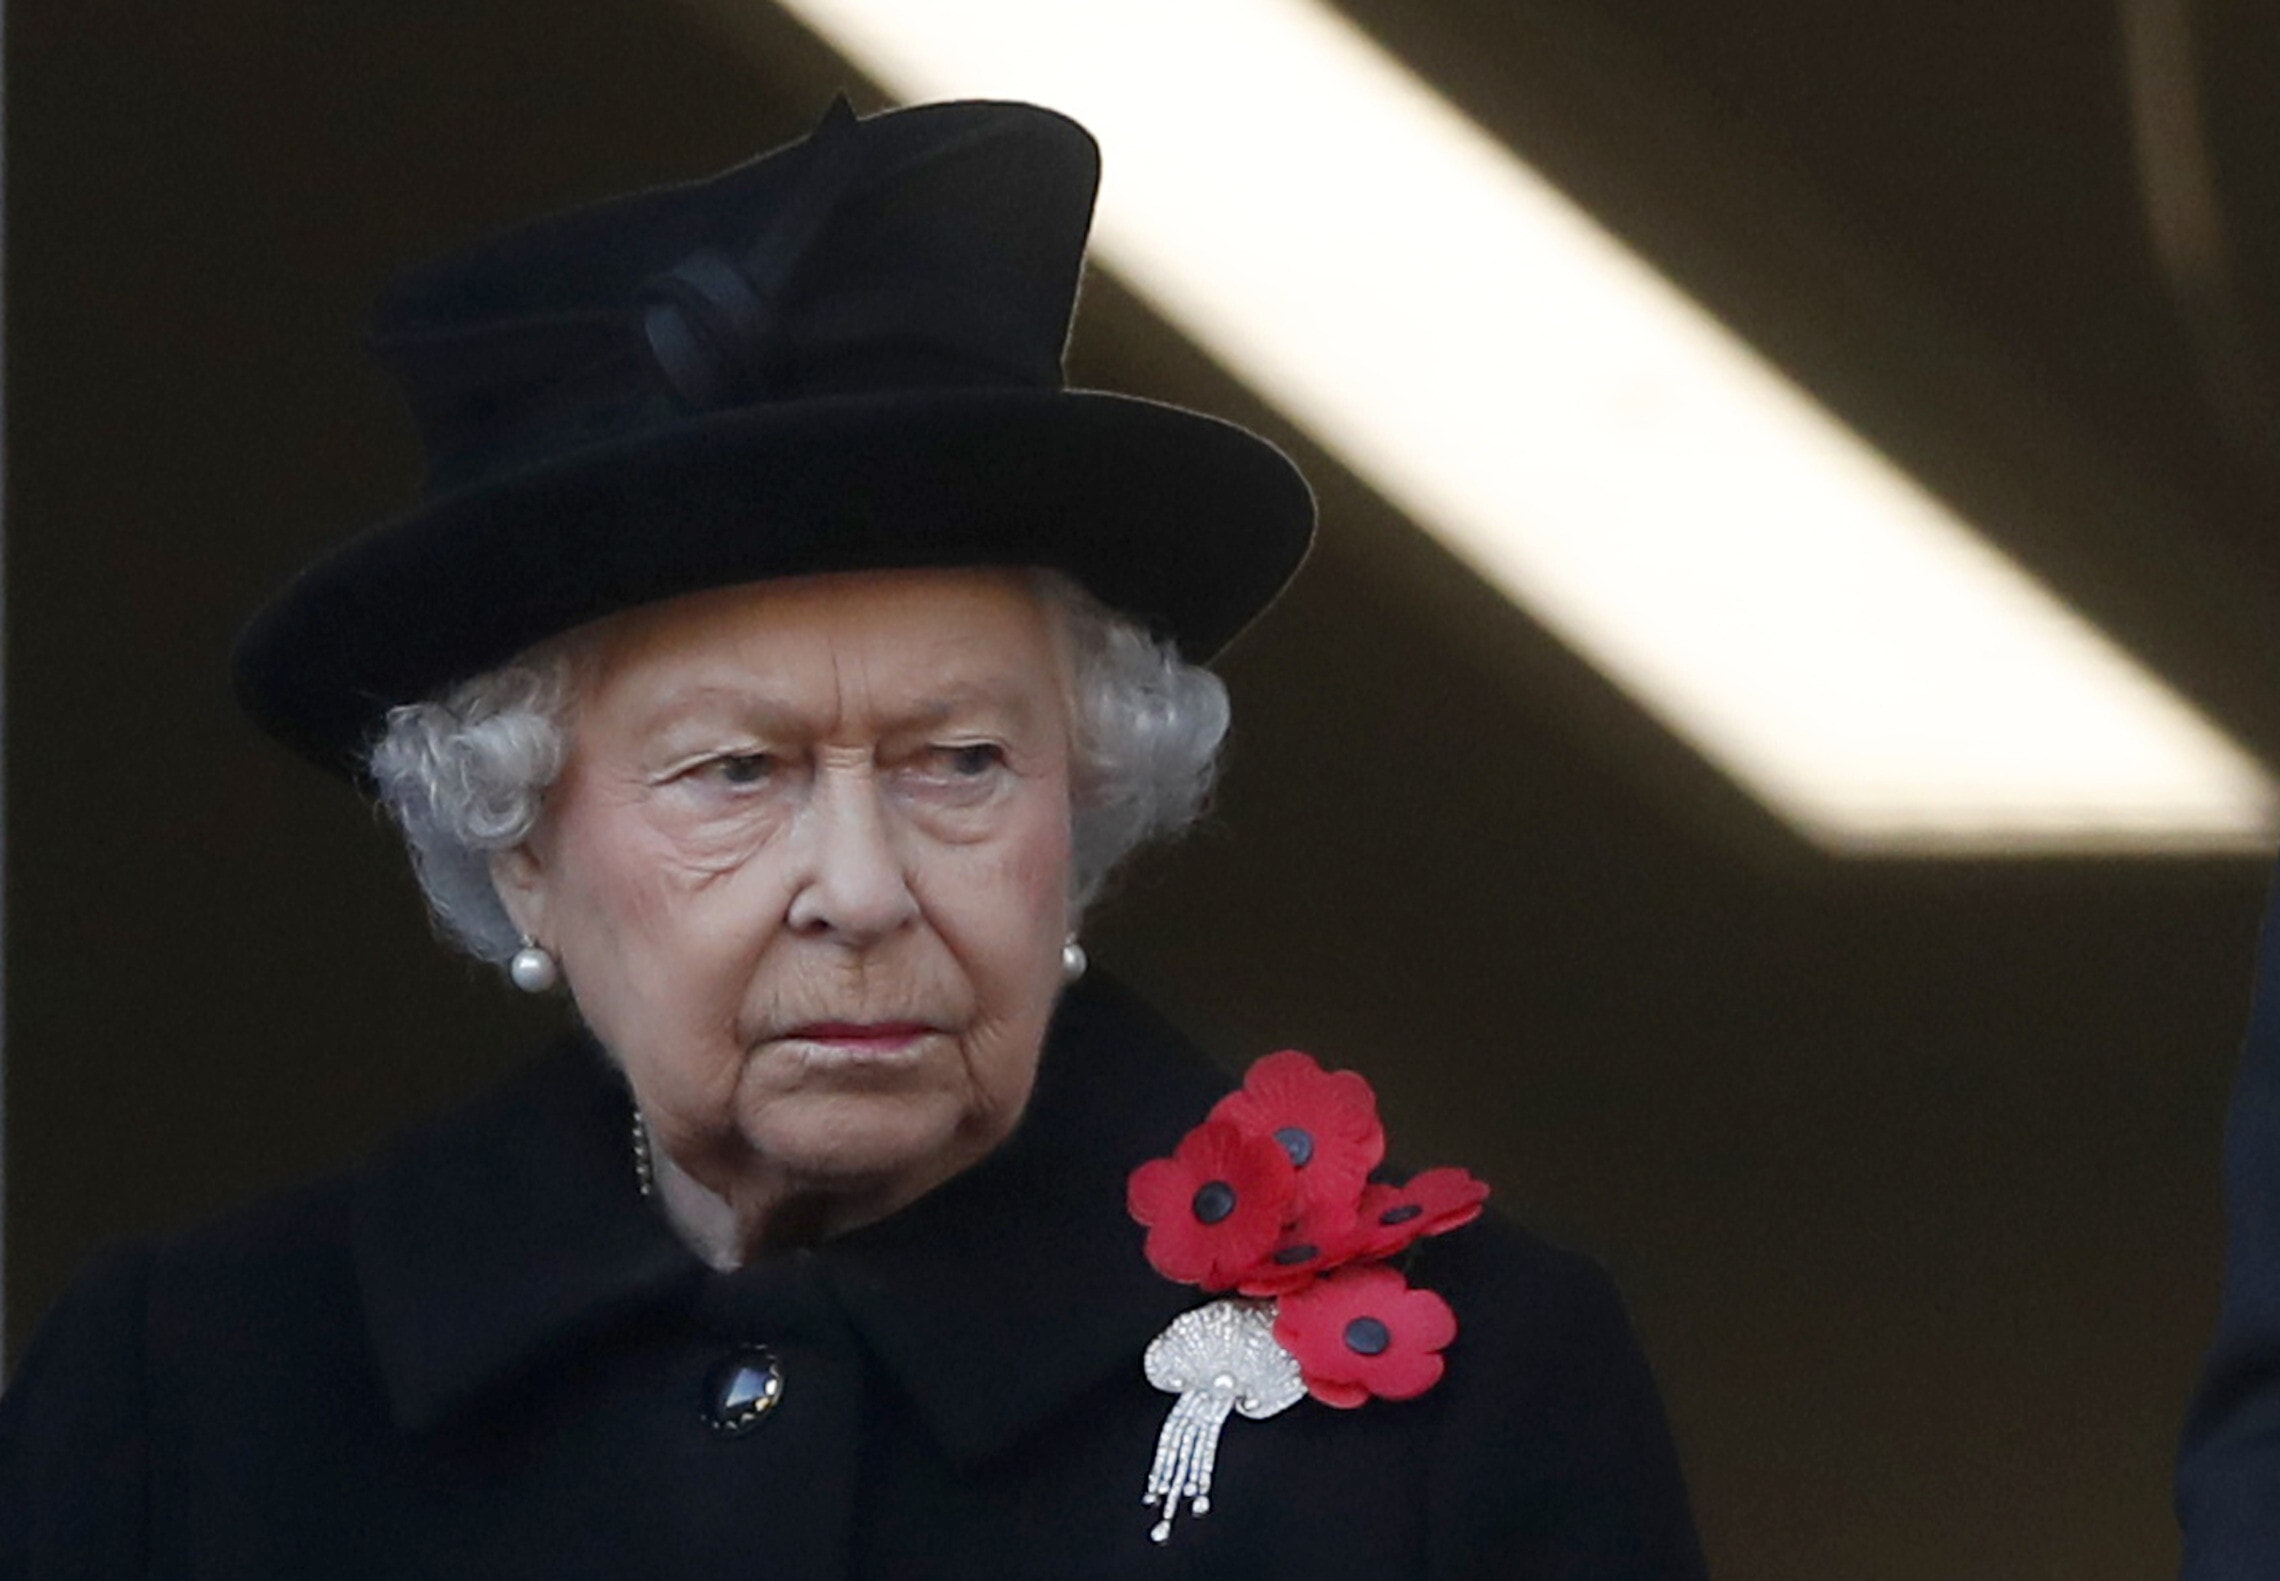 מלכת בריטניה אליזבת השנייה בטקס יום הזיכרון בלונדון, 11 בנובמבר 2018 (צילום: AP Photo/Alastair Grant)